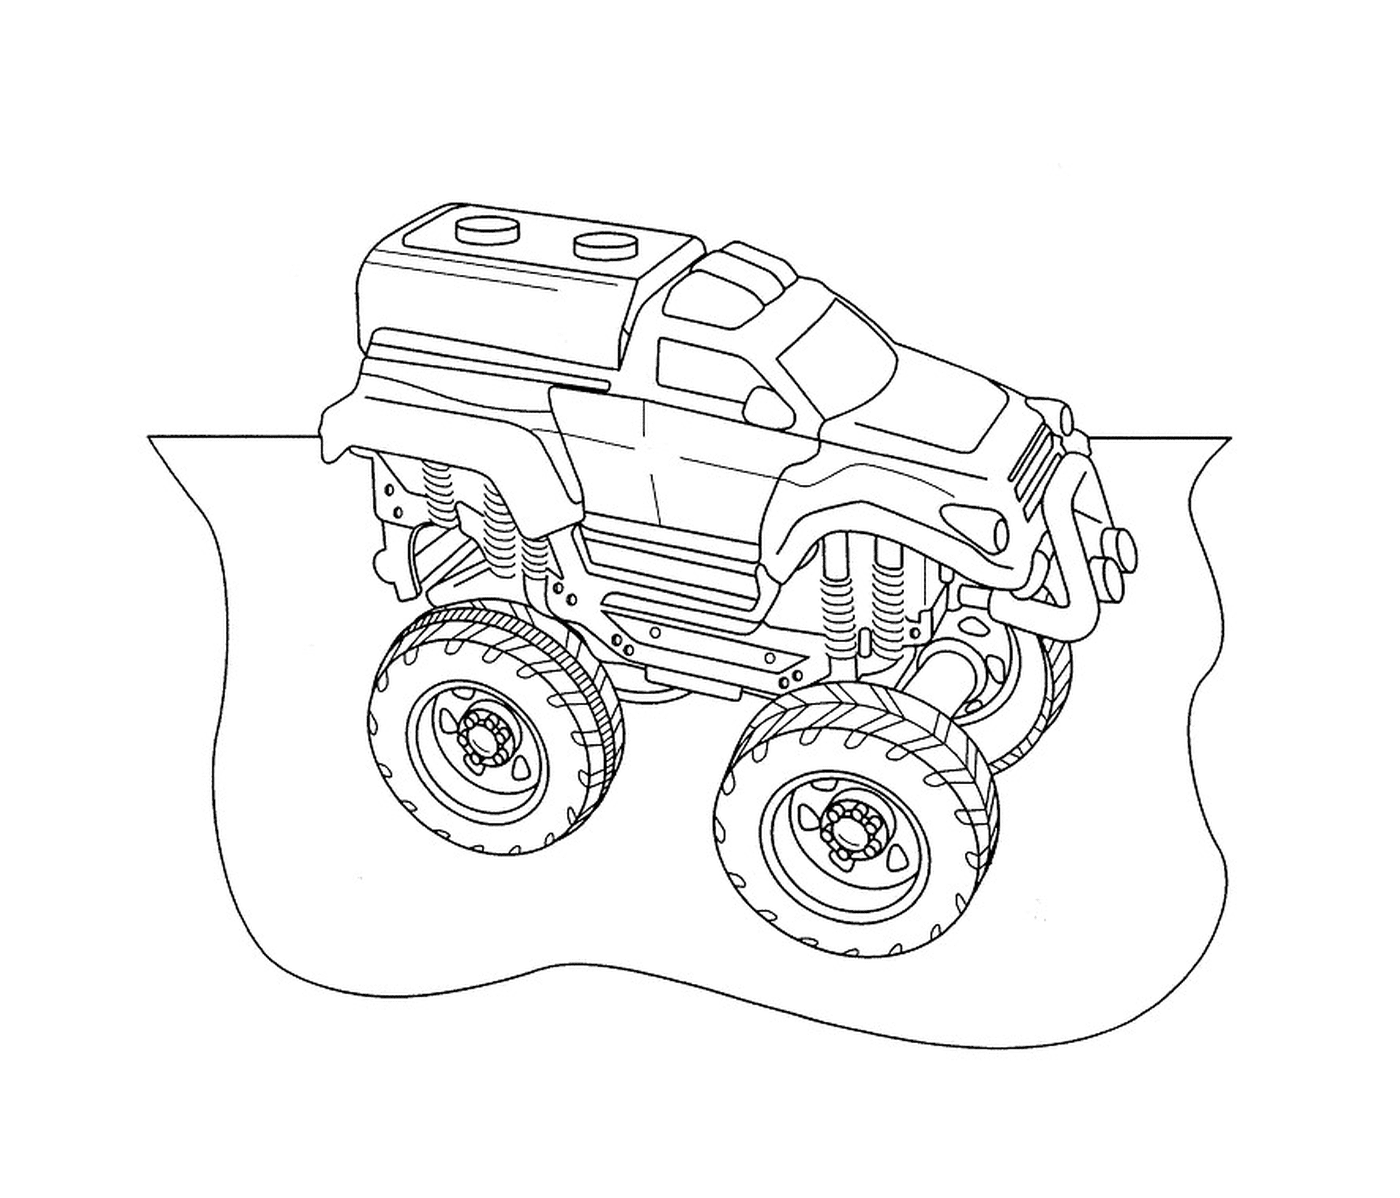  Carros de rali, caminhão monstro 